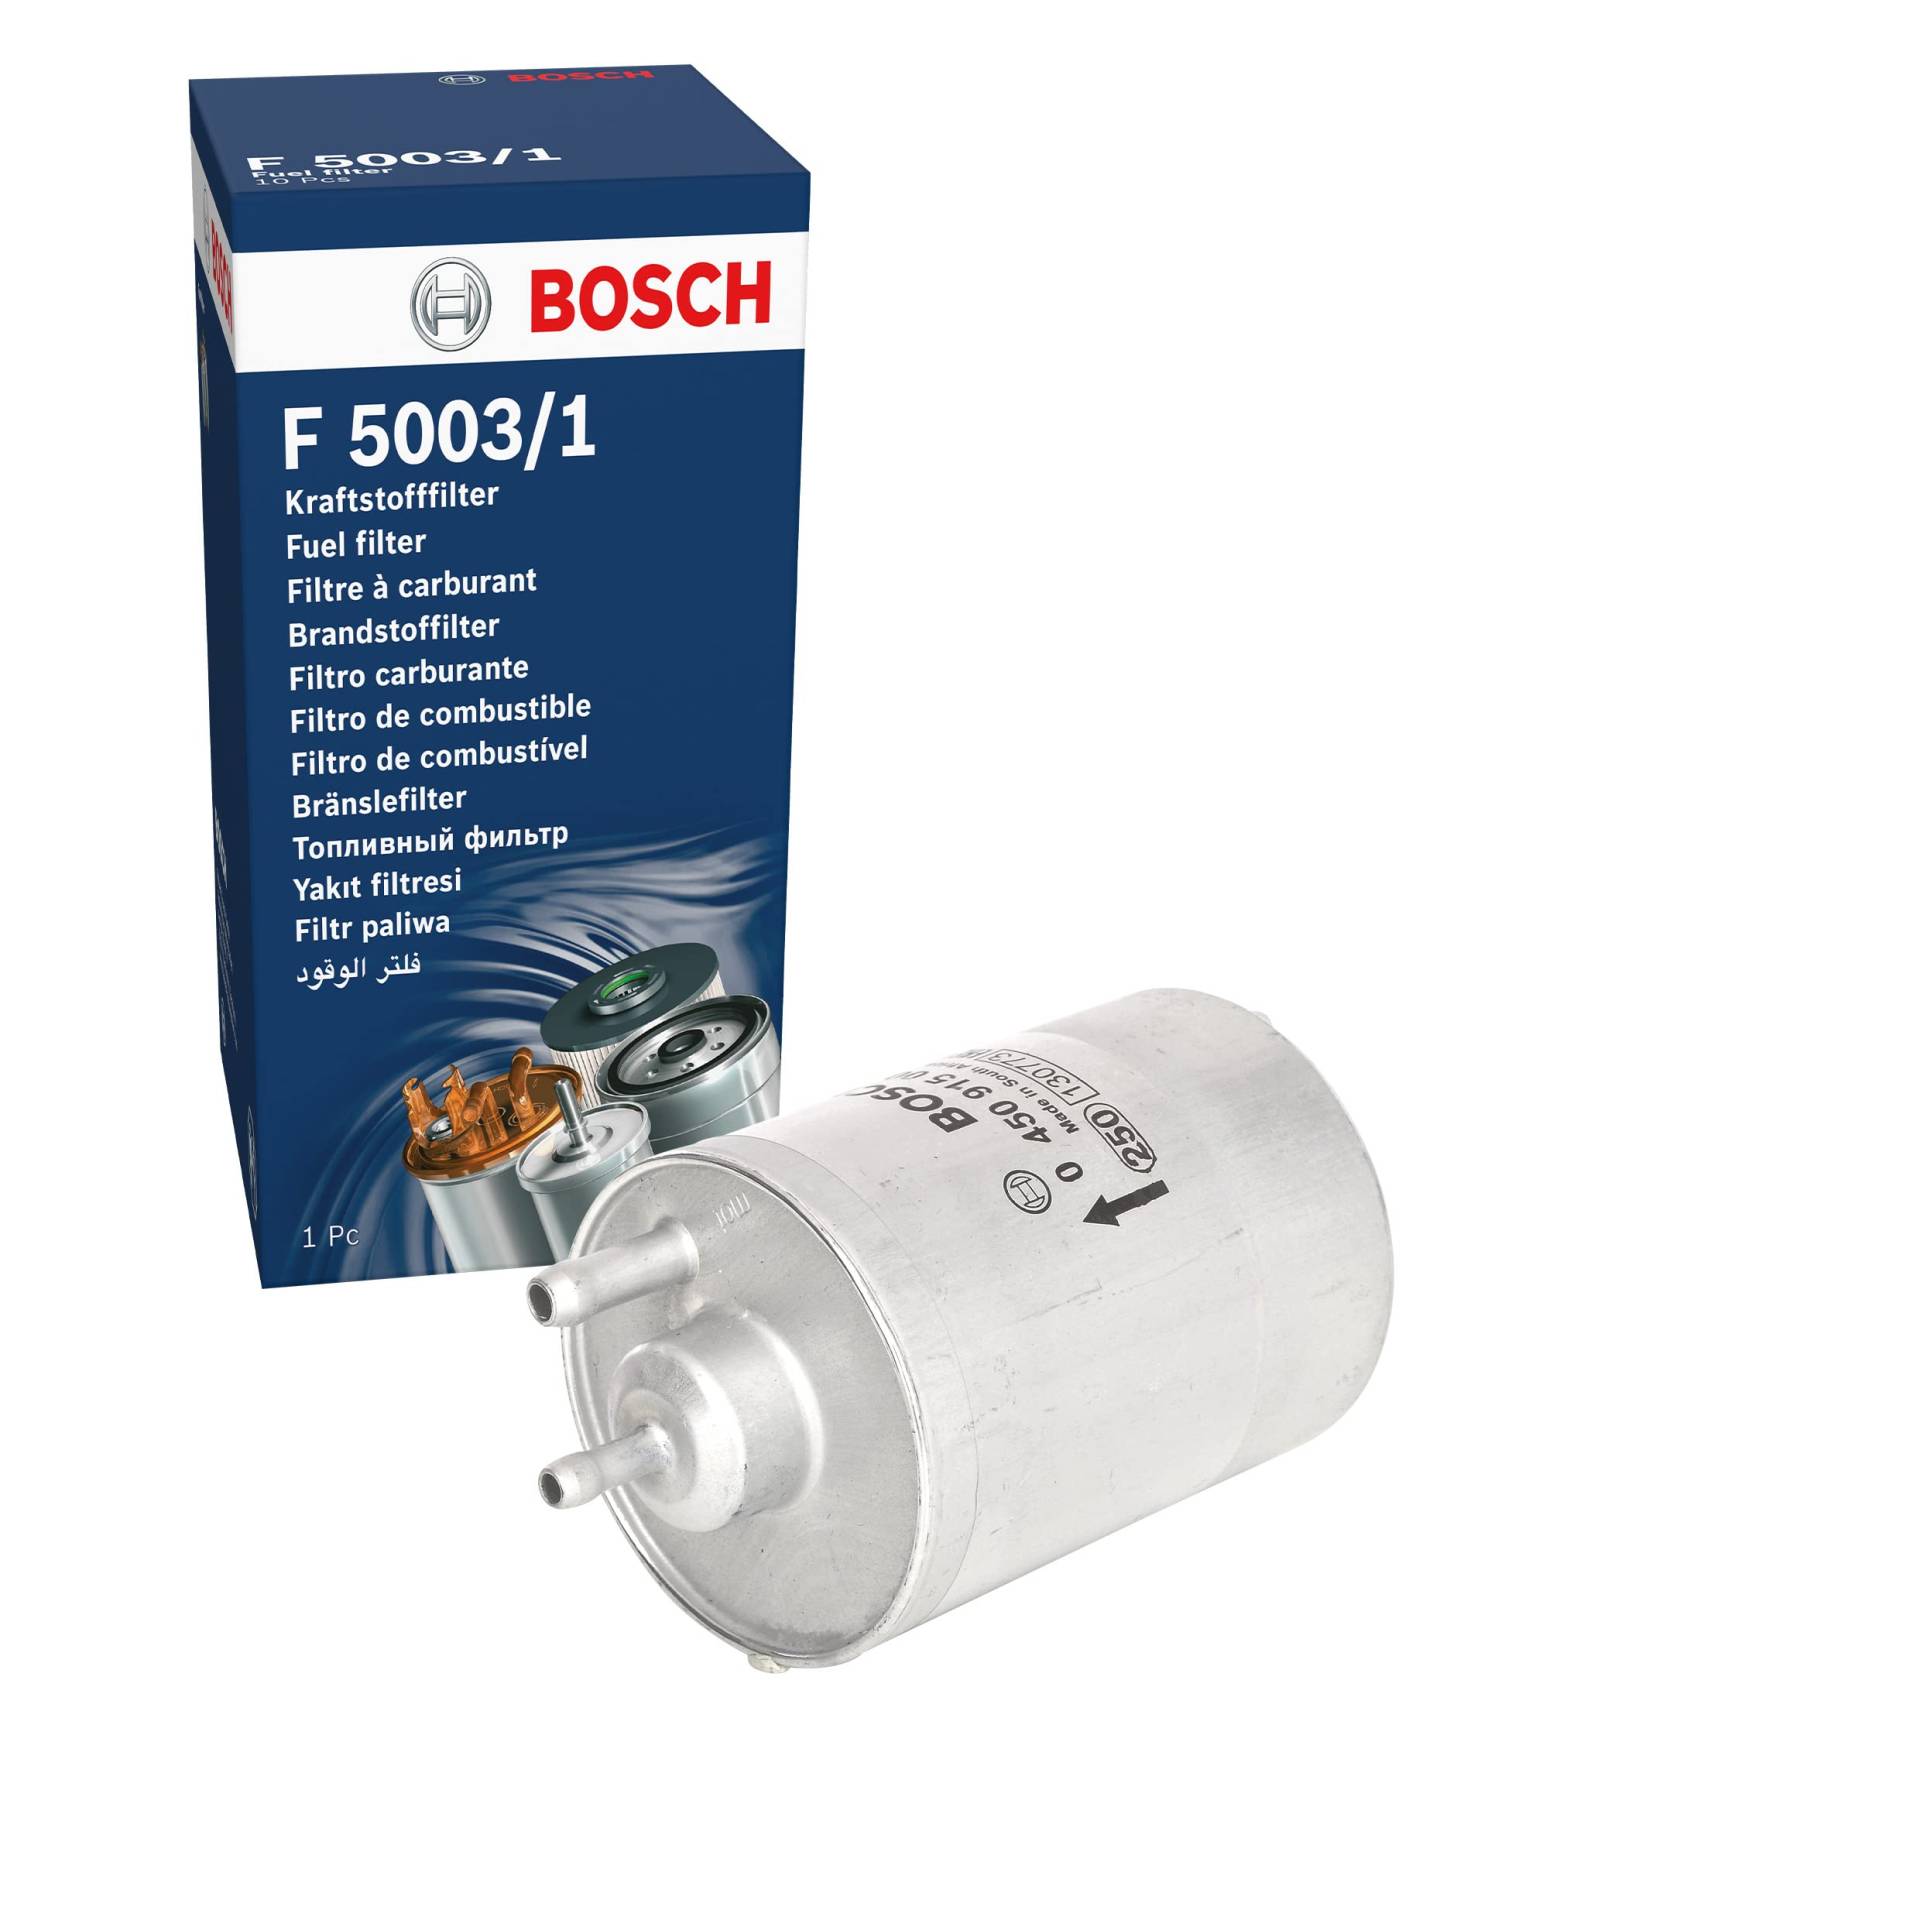 Bosch F5003-1 - Benzinfilter Auto von Bosch Automotive